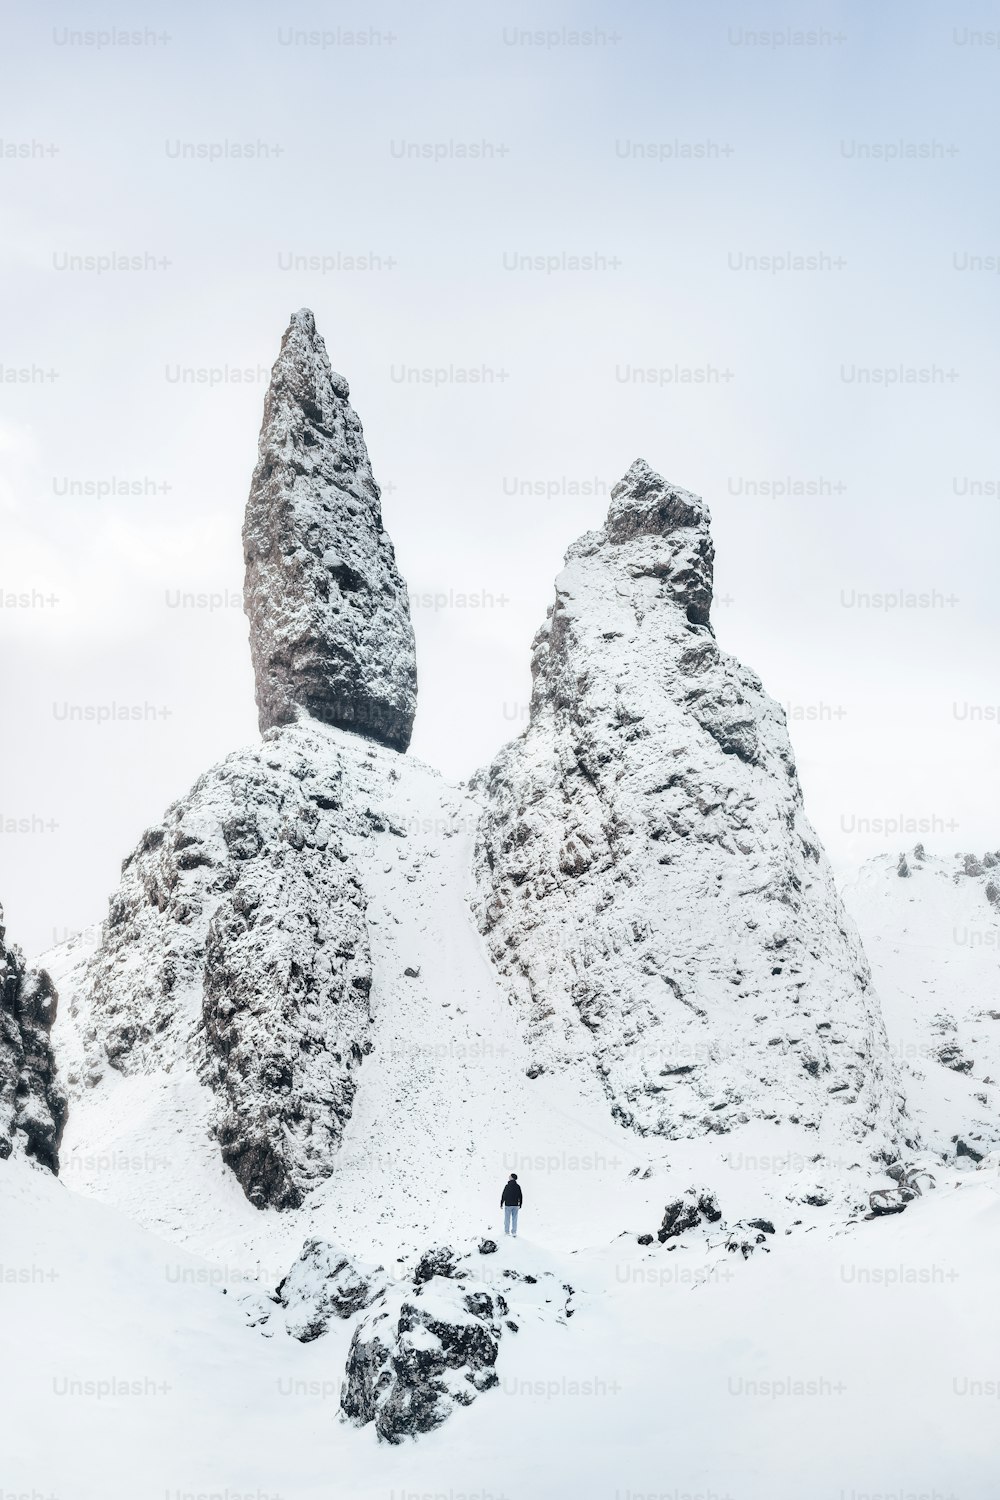 una persona in piedi sulla cima di una montagna innevata